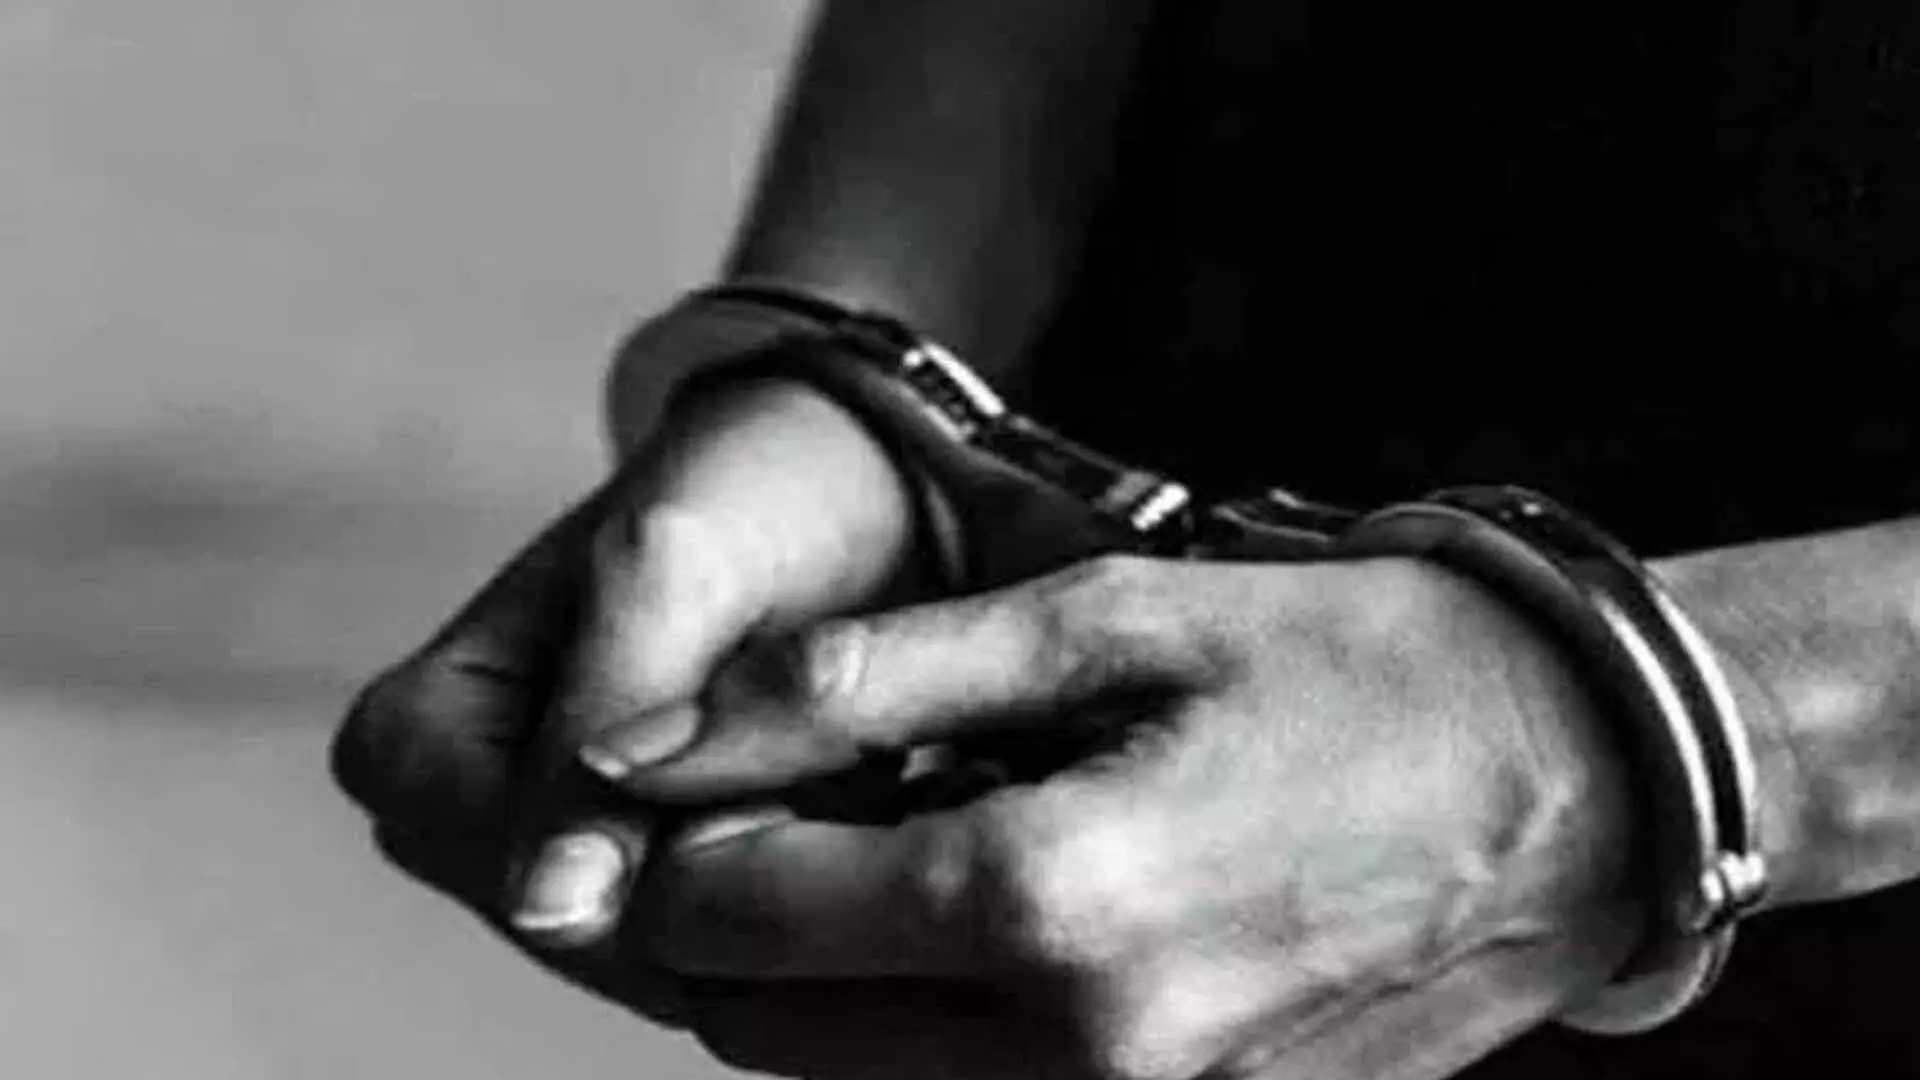 IAS officer के घर चोरी करने वाले को नरसिंगी पुलिस ने किया गिरफ्तार